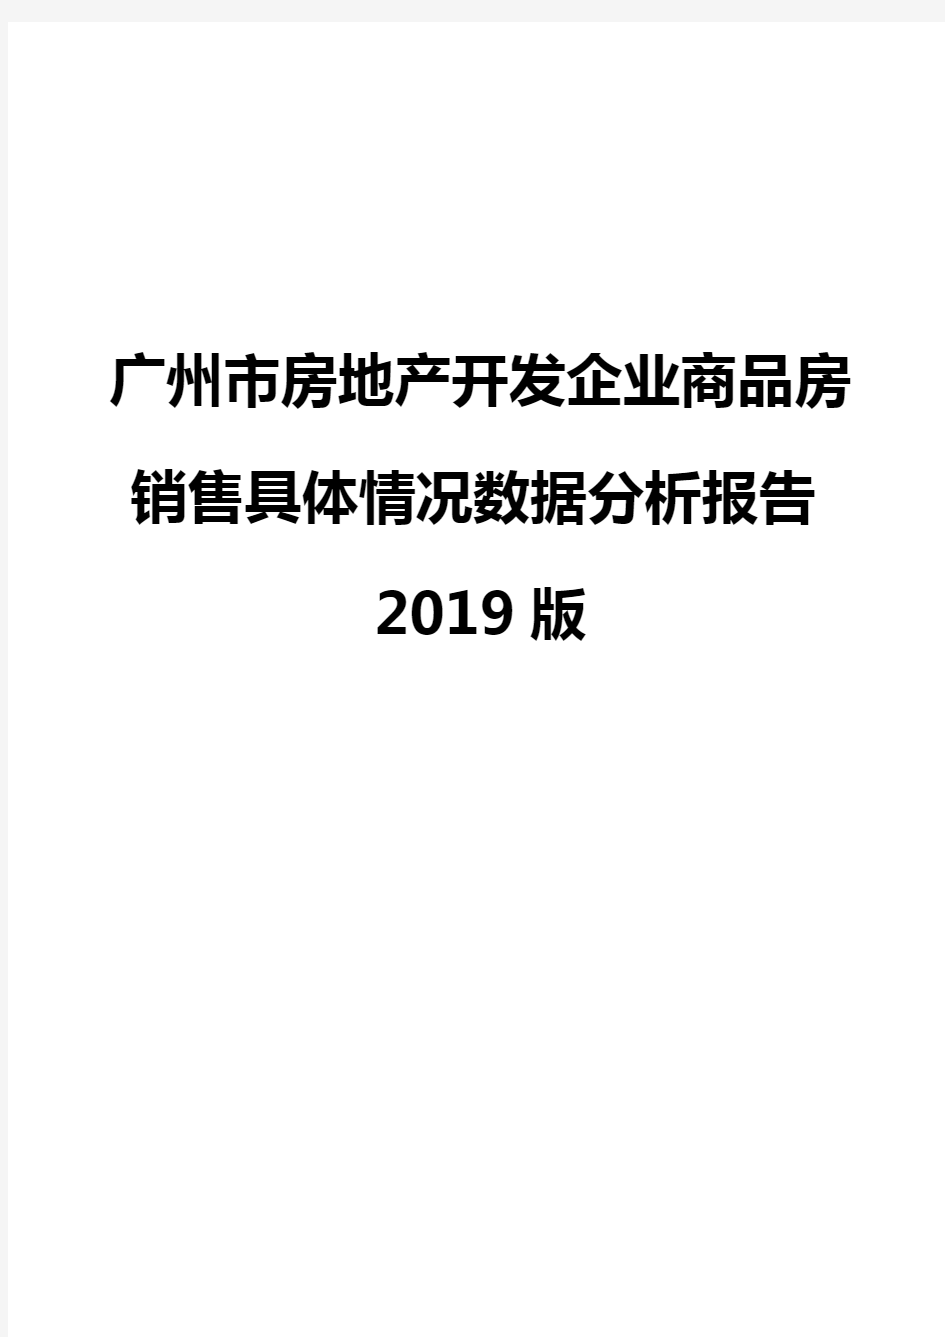 广州市房地产开发企业商品房销售具体情况数据分析报告2019版